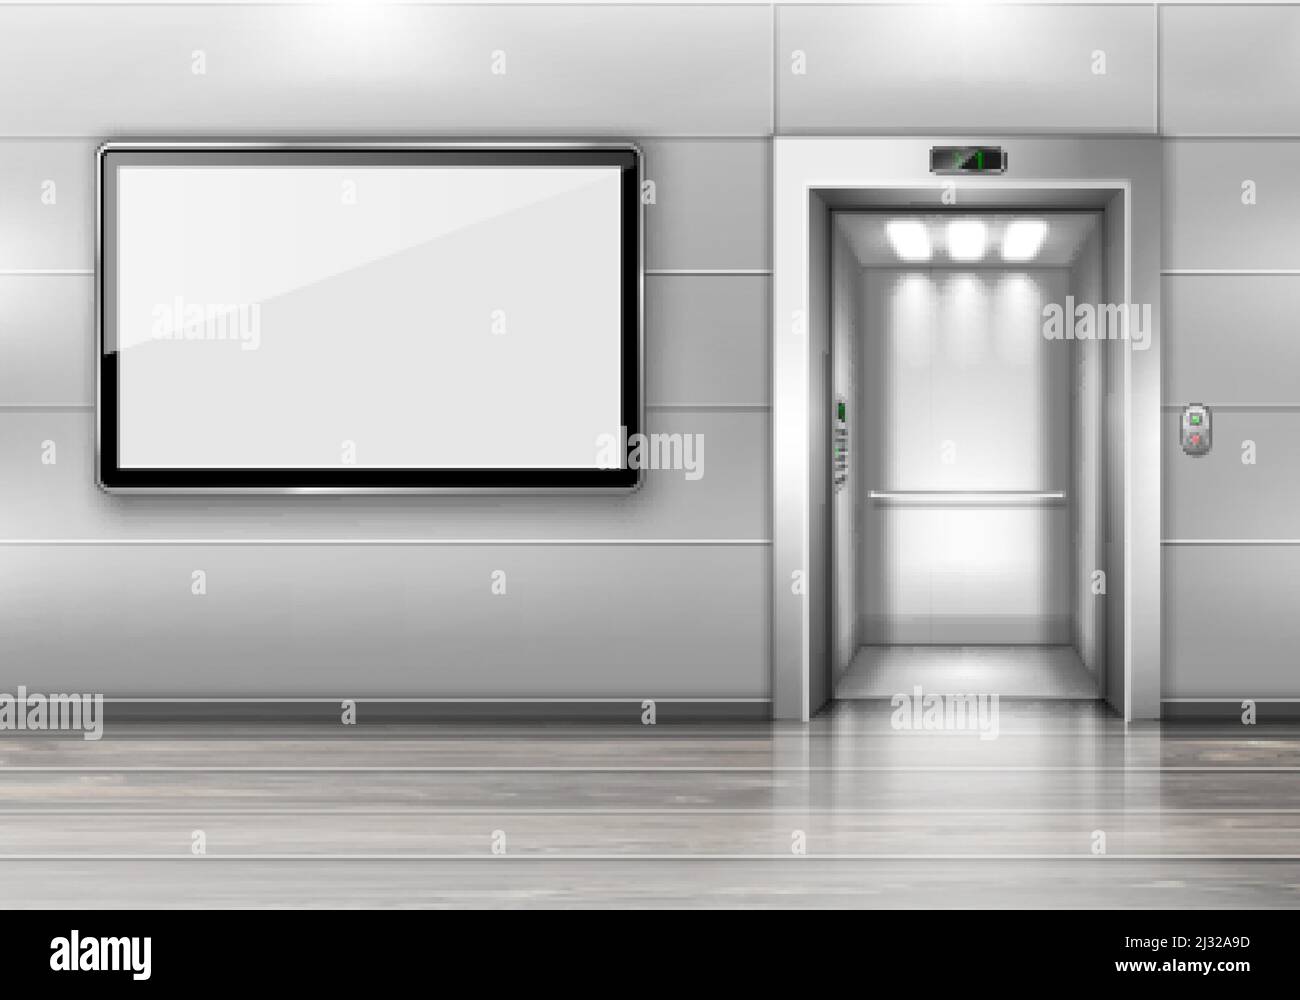 Ascensore realistico con porta aperta e schermo TV a parete in ufficio o nel moderno corridoio dell'hotel, lobby vuota con ascensore, pavimento in legno e disp vuoto Illustrazione Vettoriale